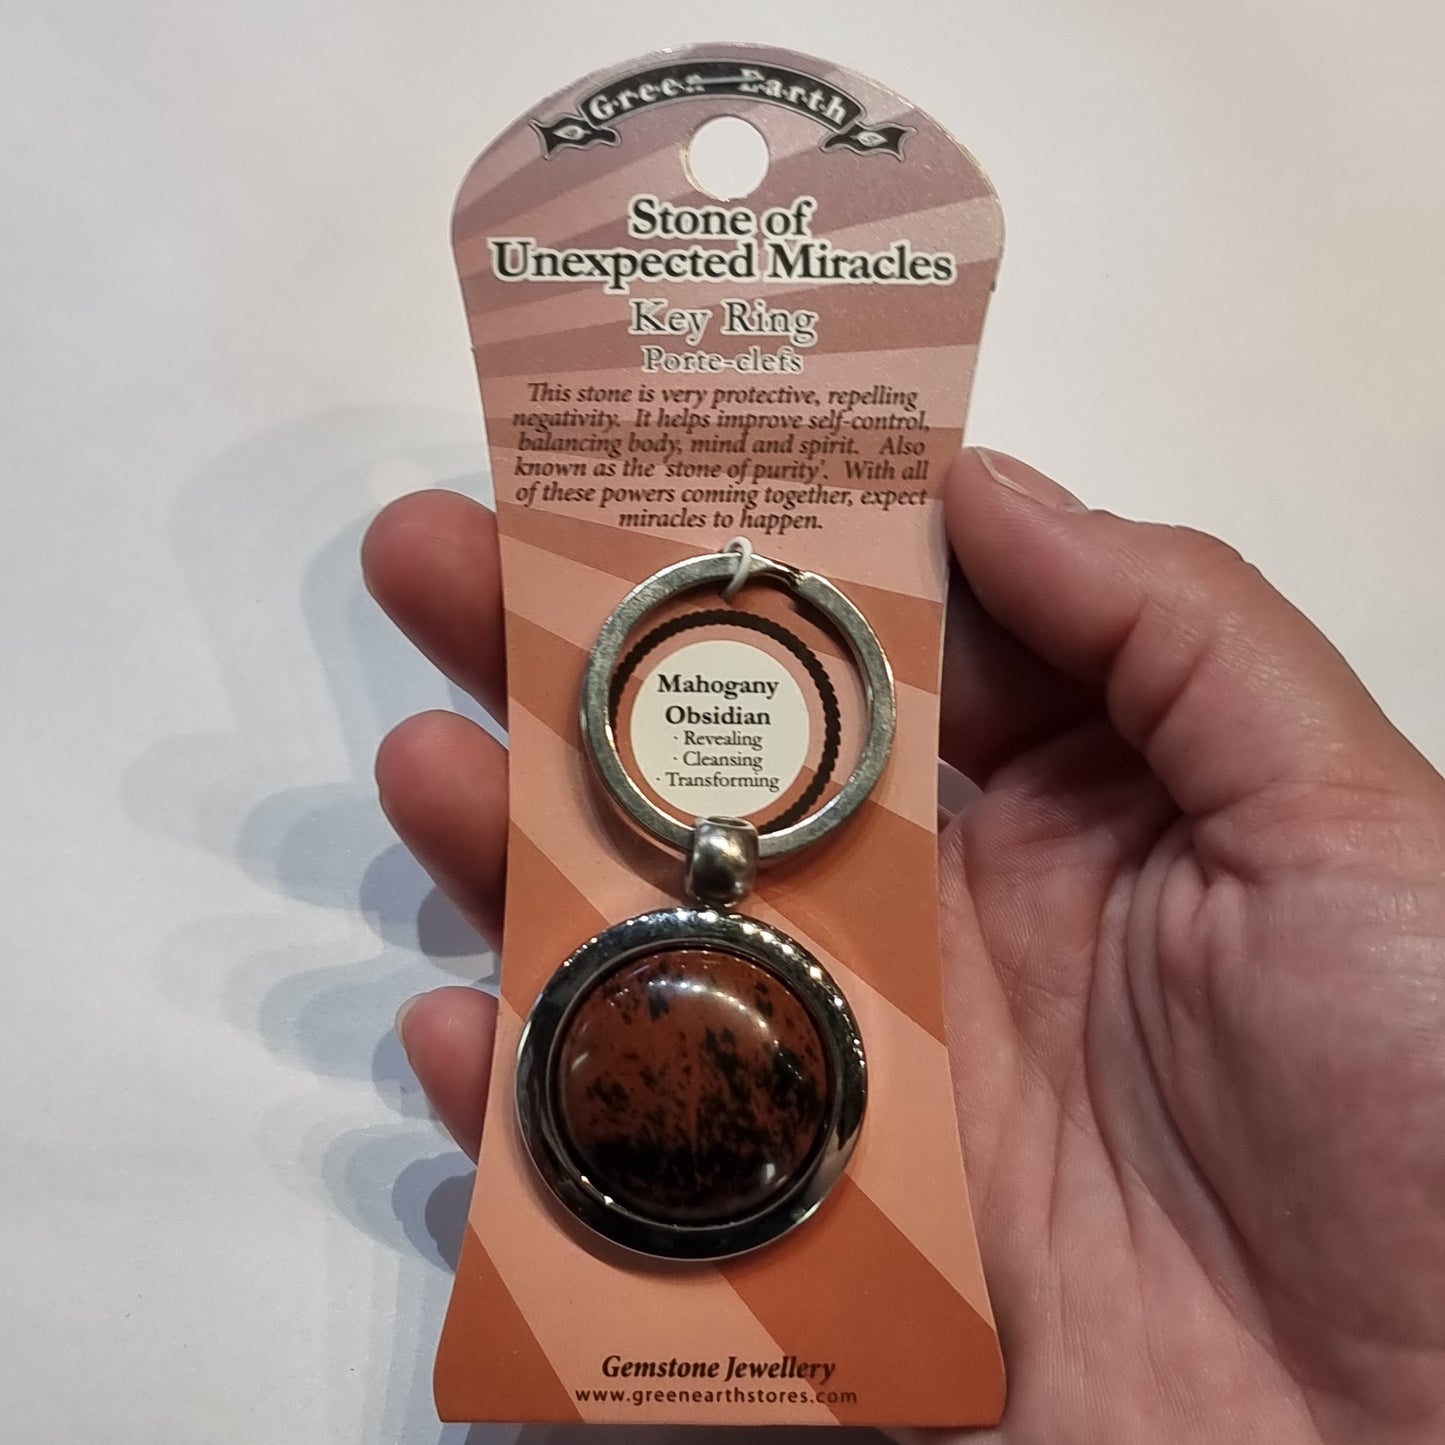 Mahogany obsidian keychain - Rivendell Shop